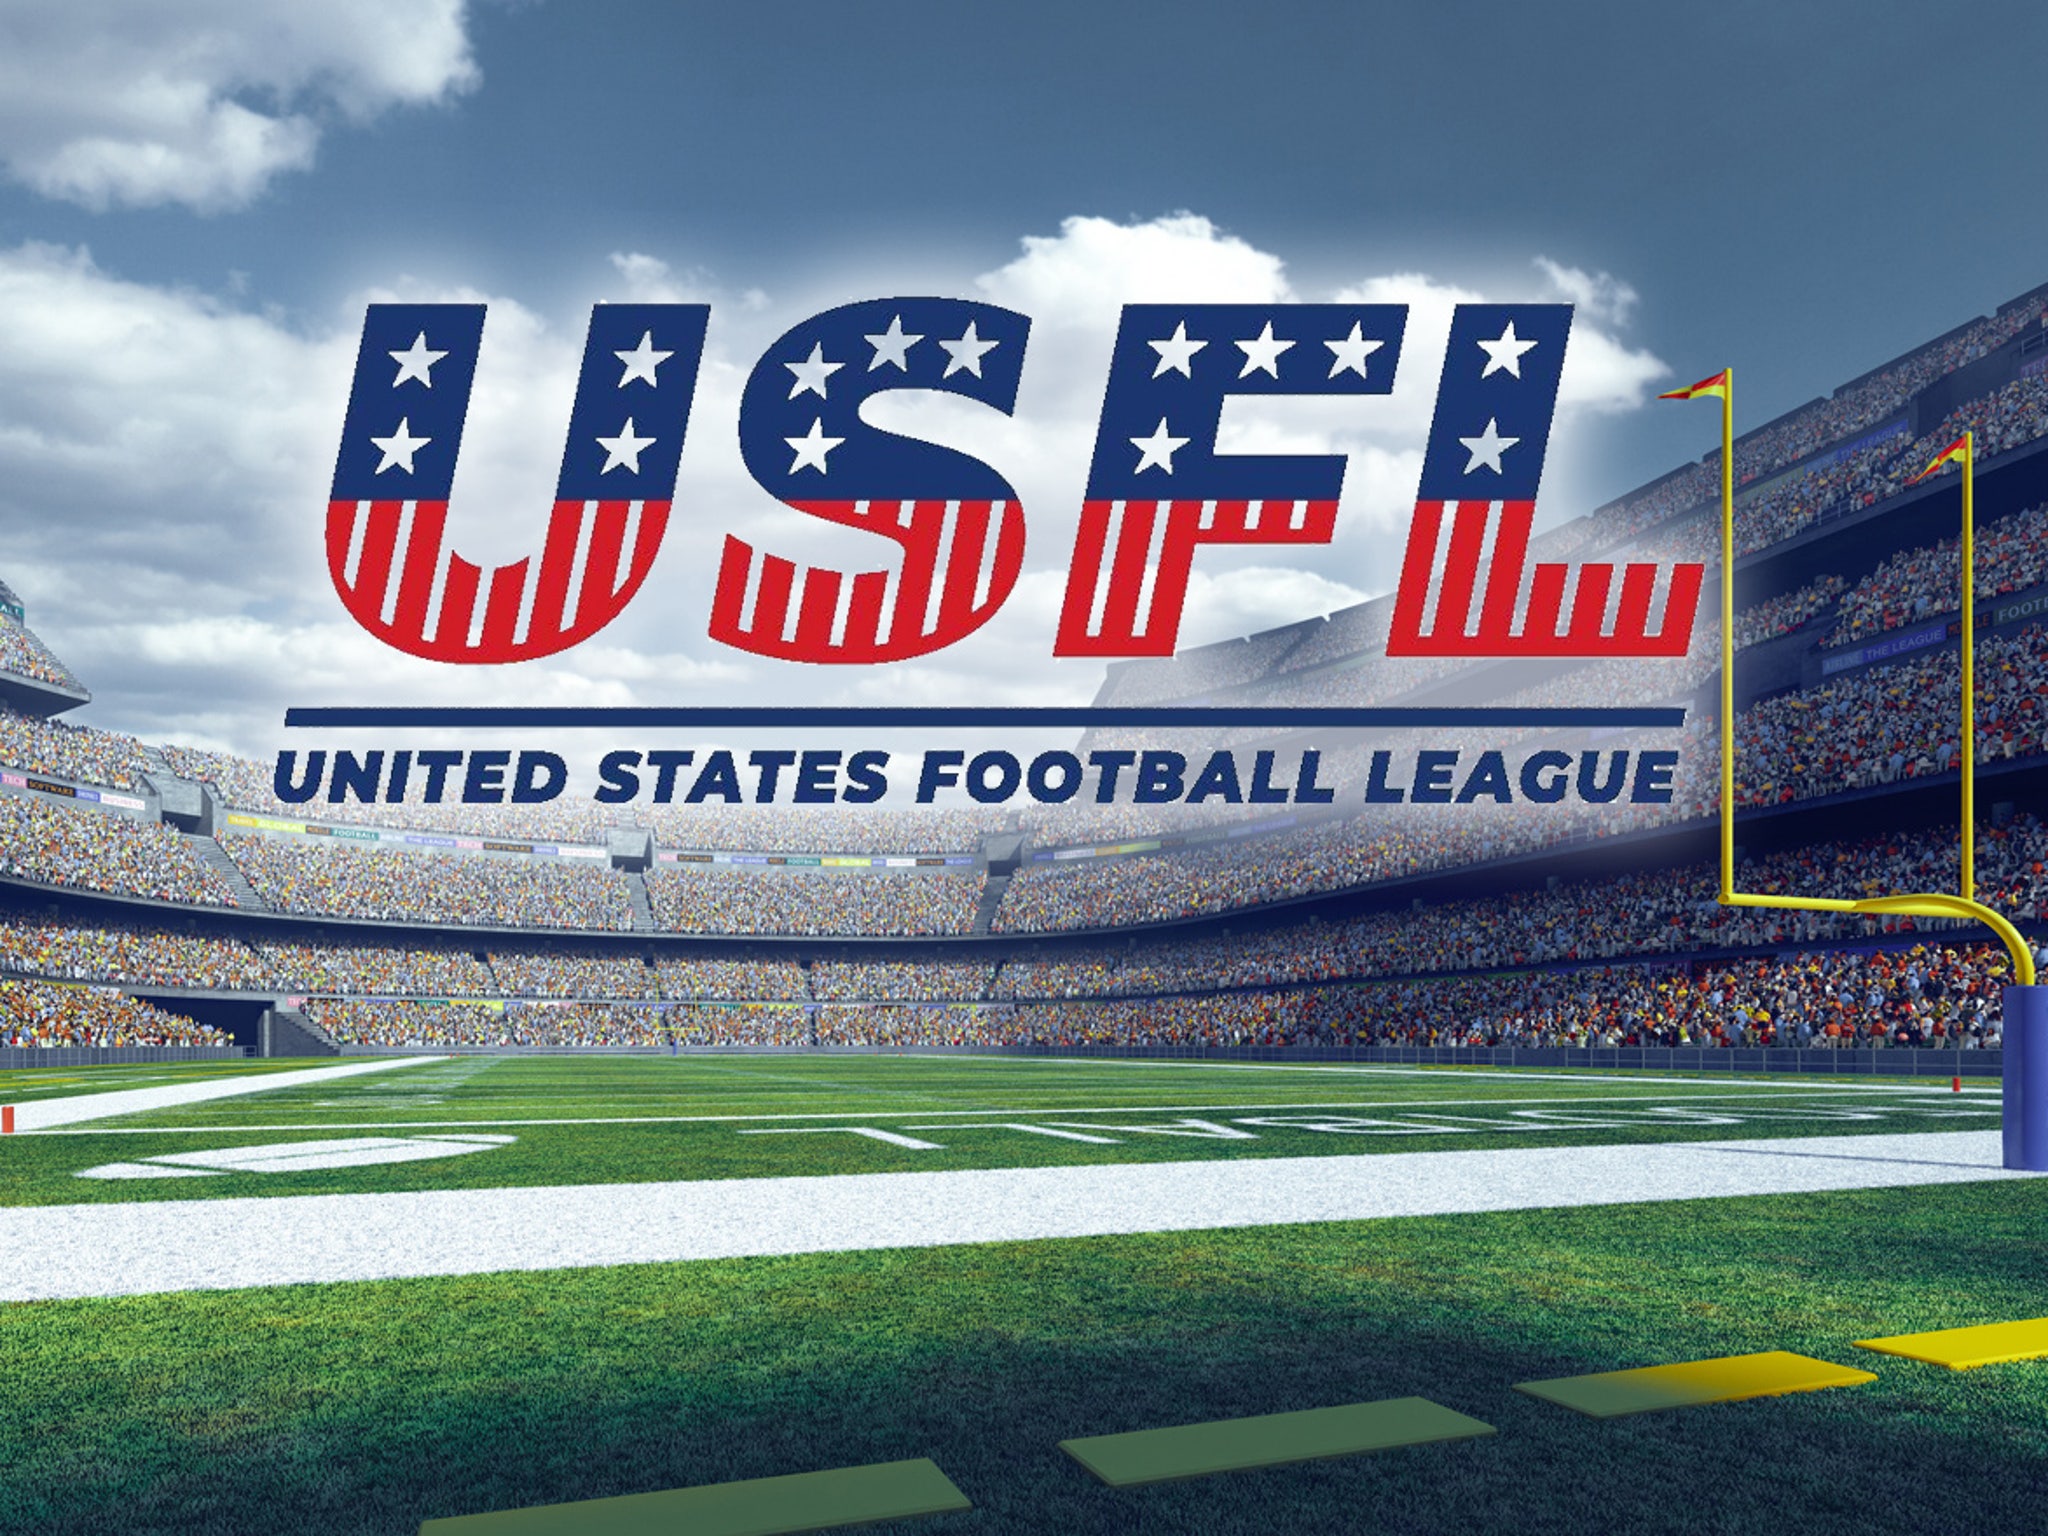 united states football league